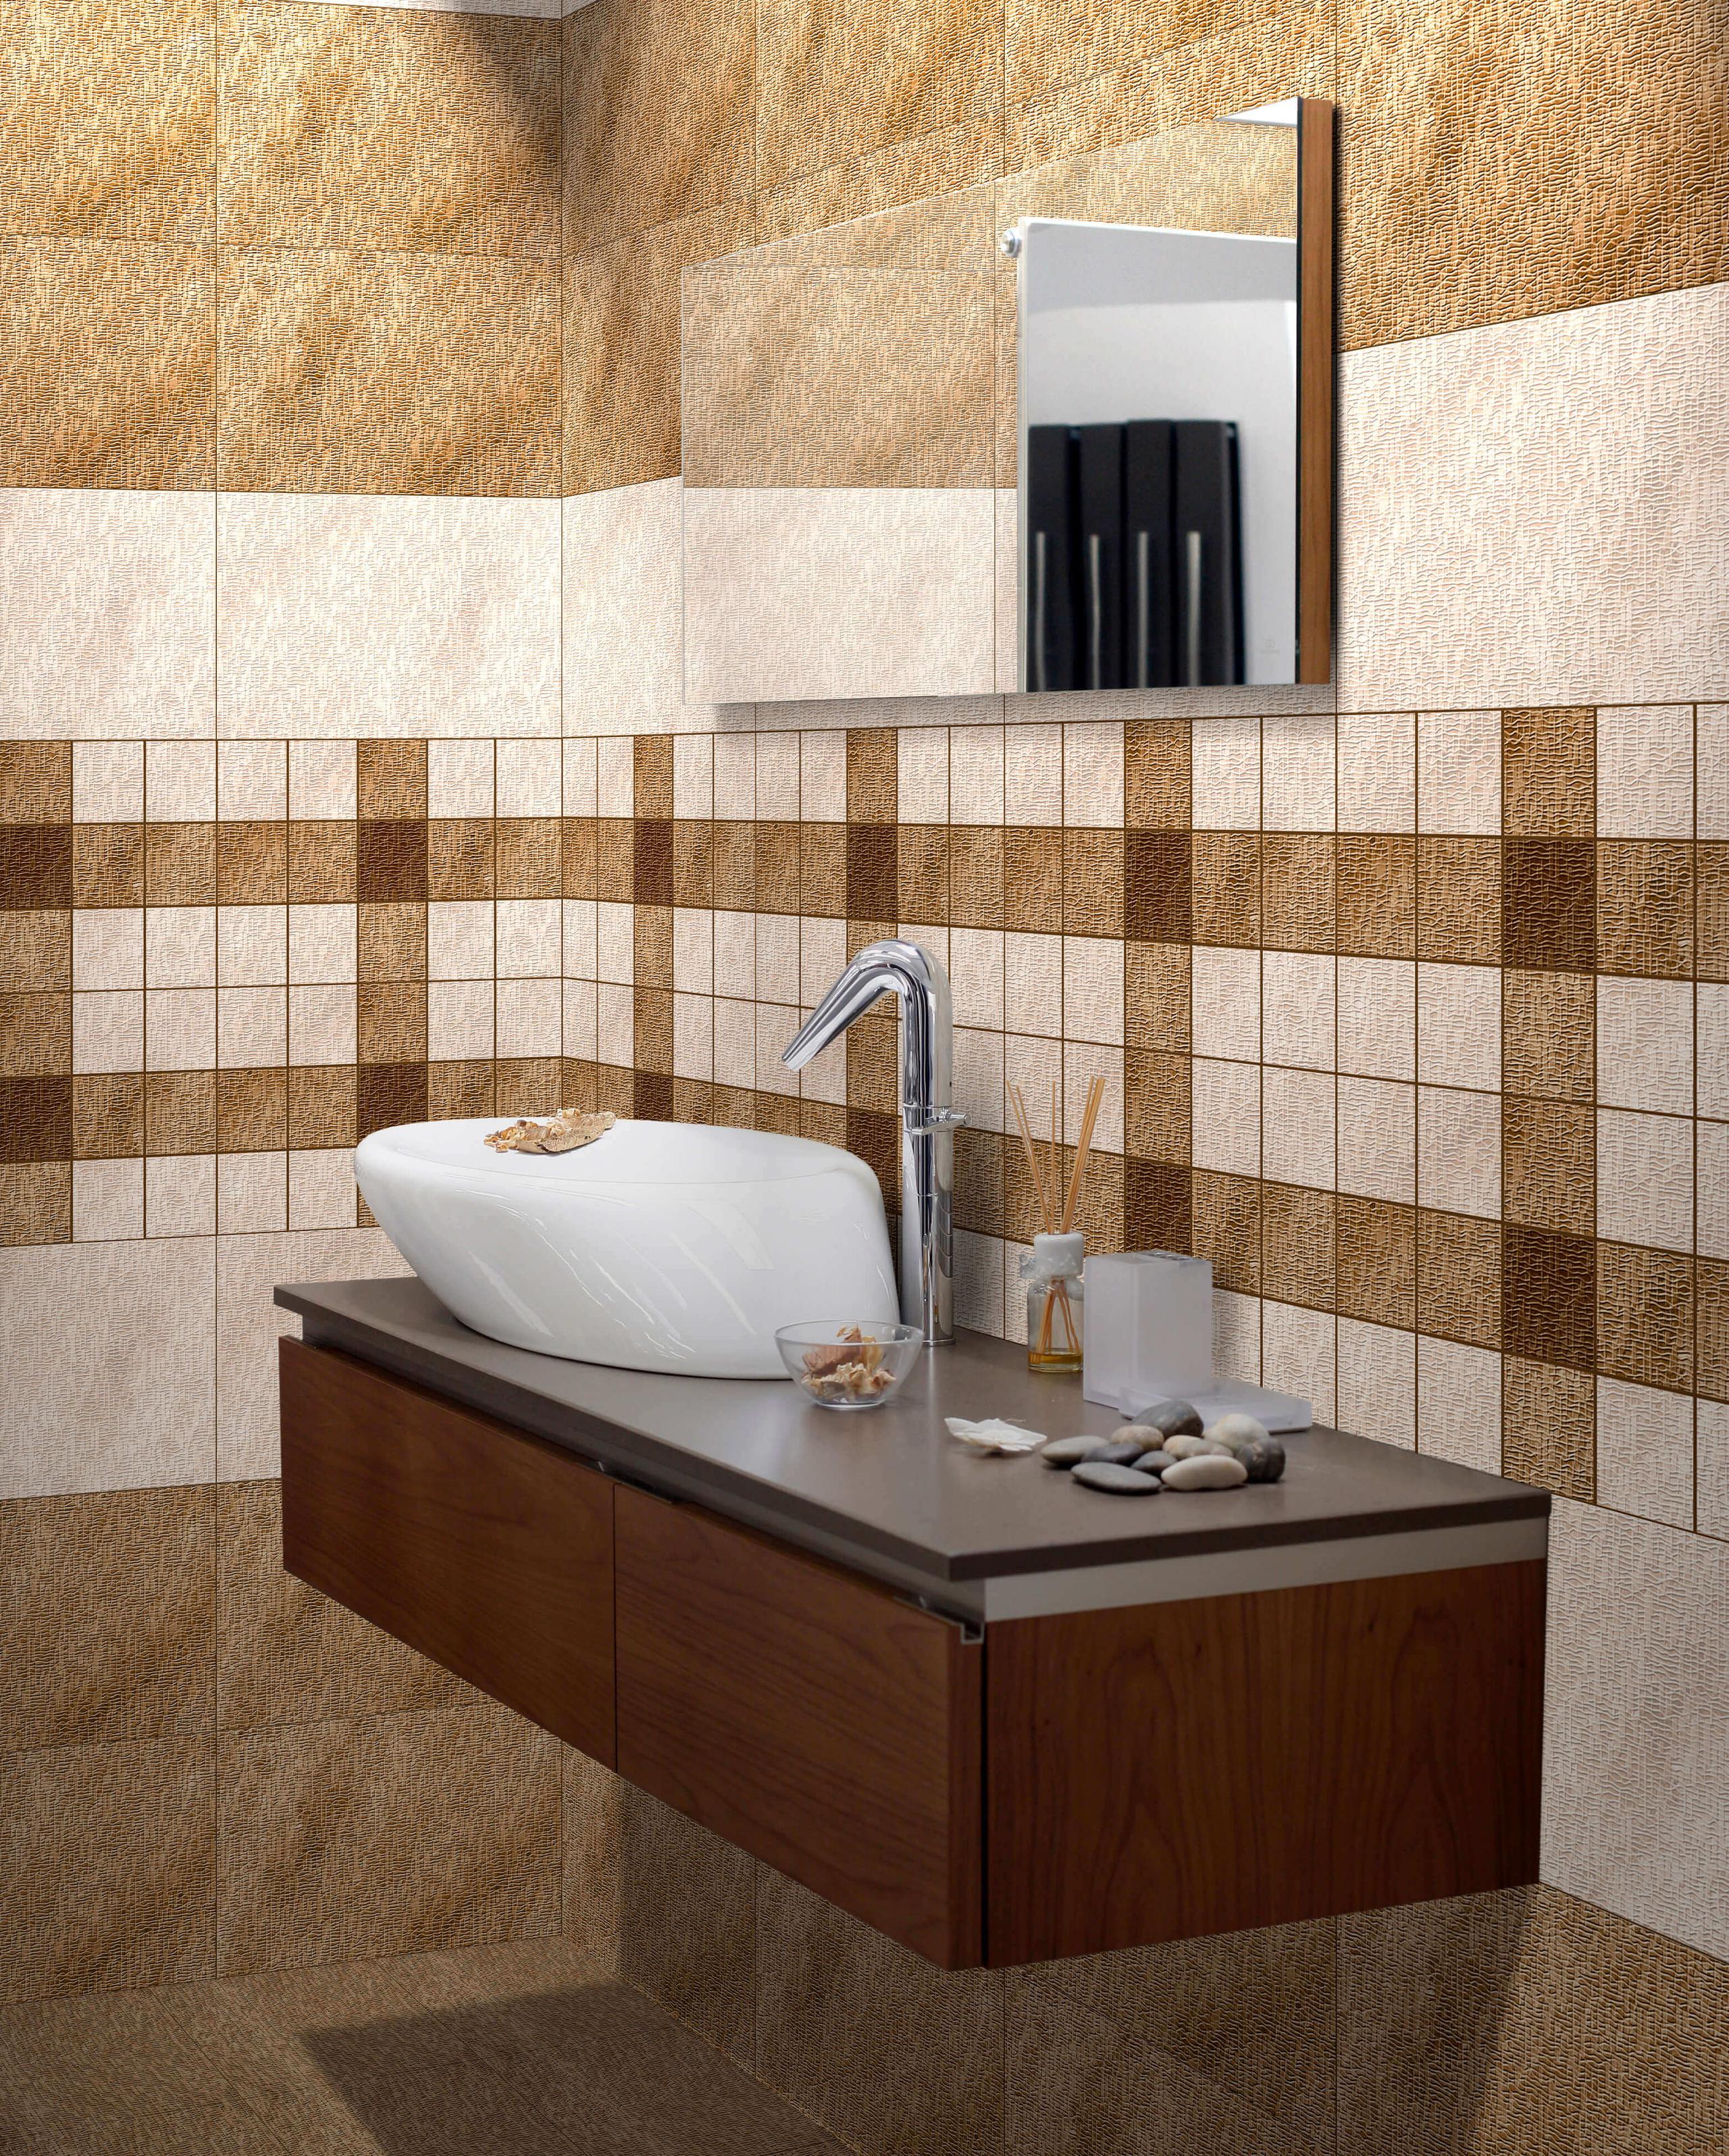 Glossy Tiles for Bathroom Tiles, Kitchen Tiles